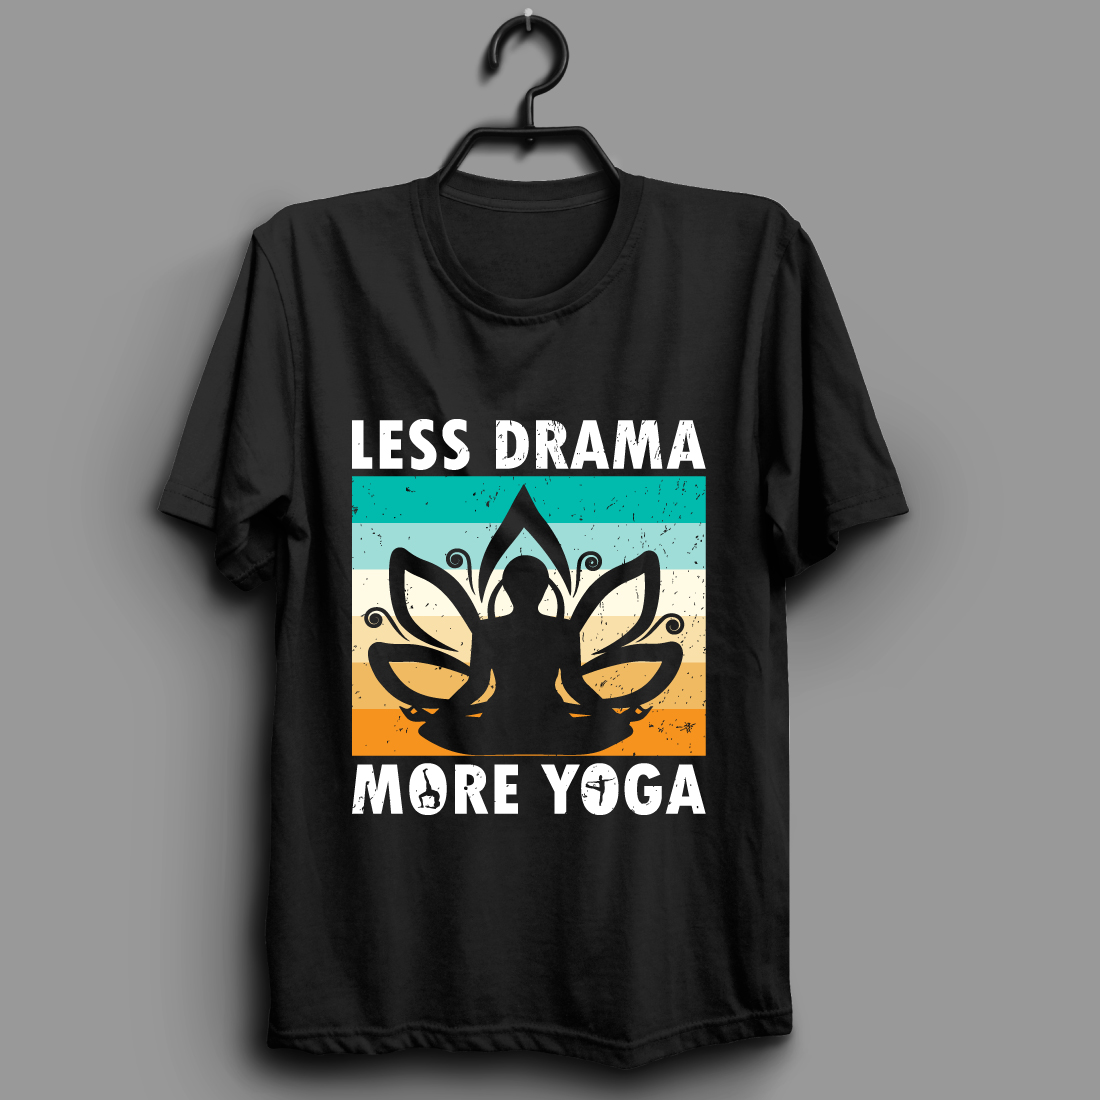 Yoga T-Shirts, Unique Designs